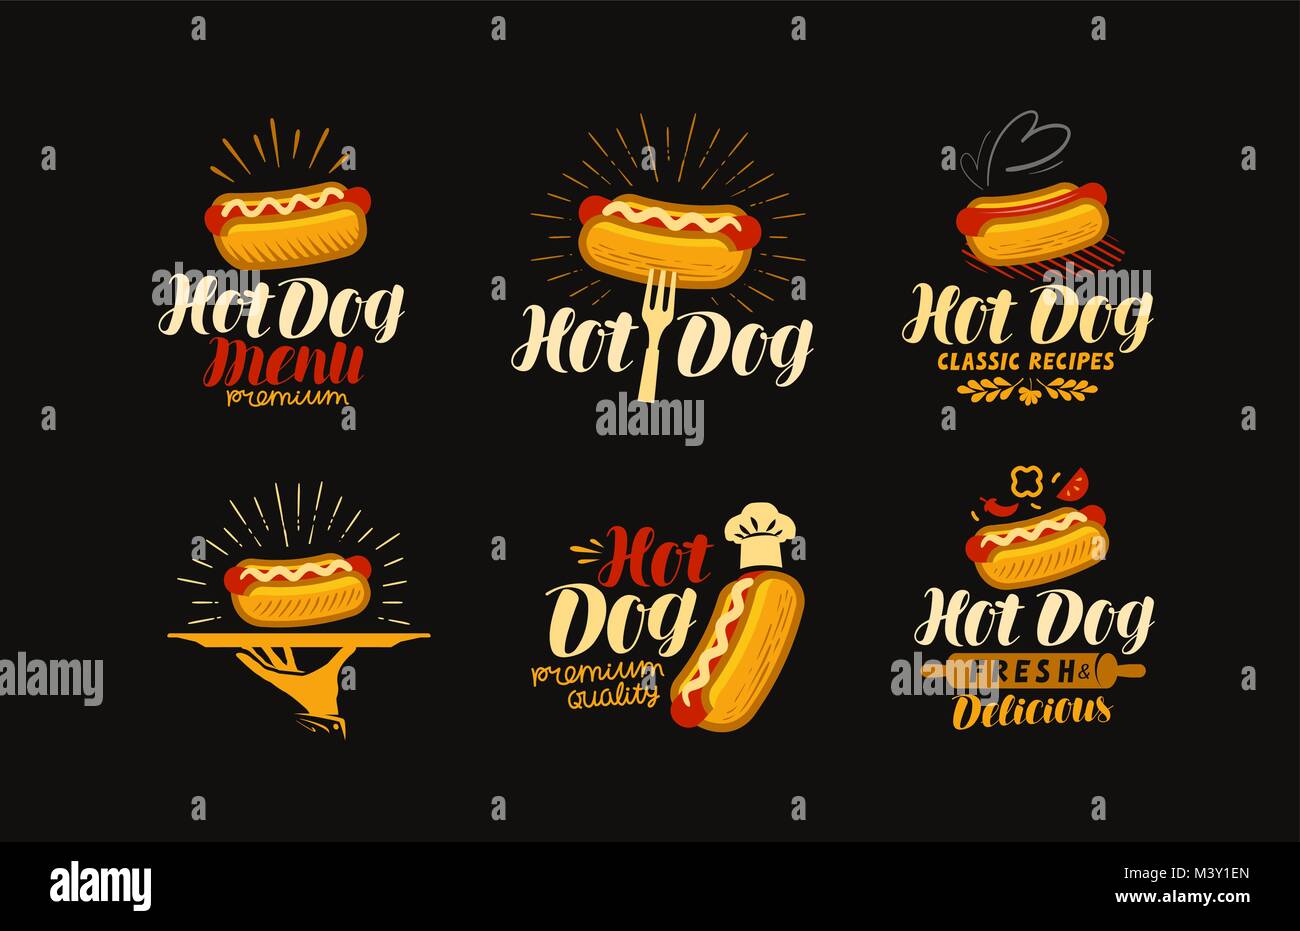 Hot Dog Food Logo Or Label Elements For Design Of Restaurant